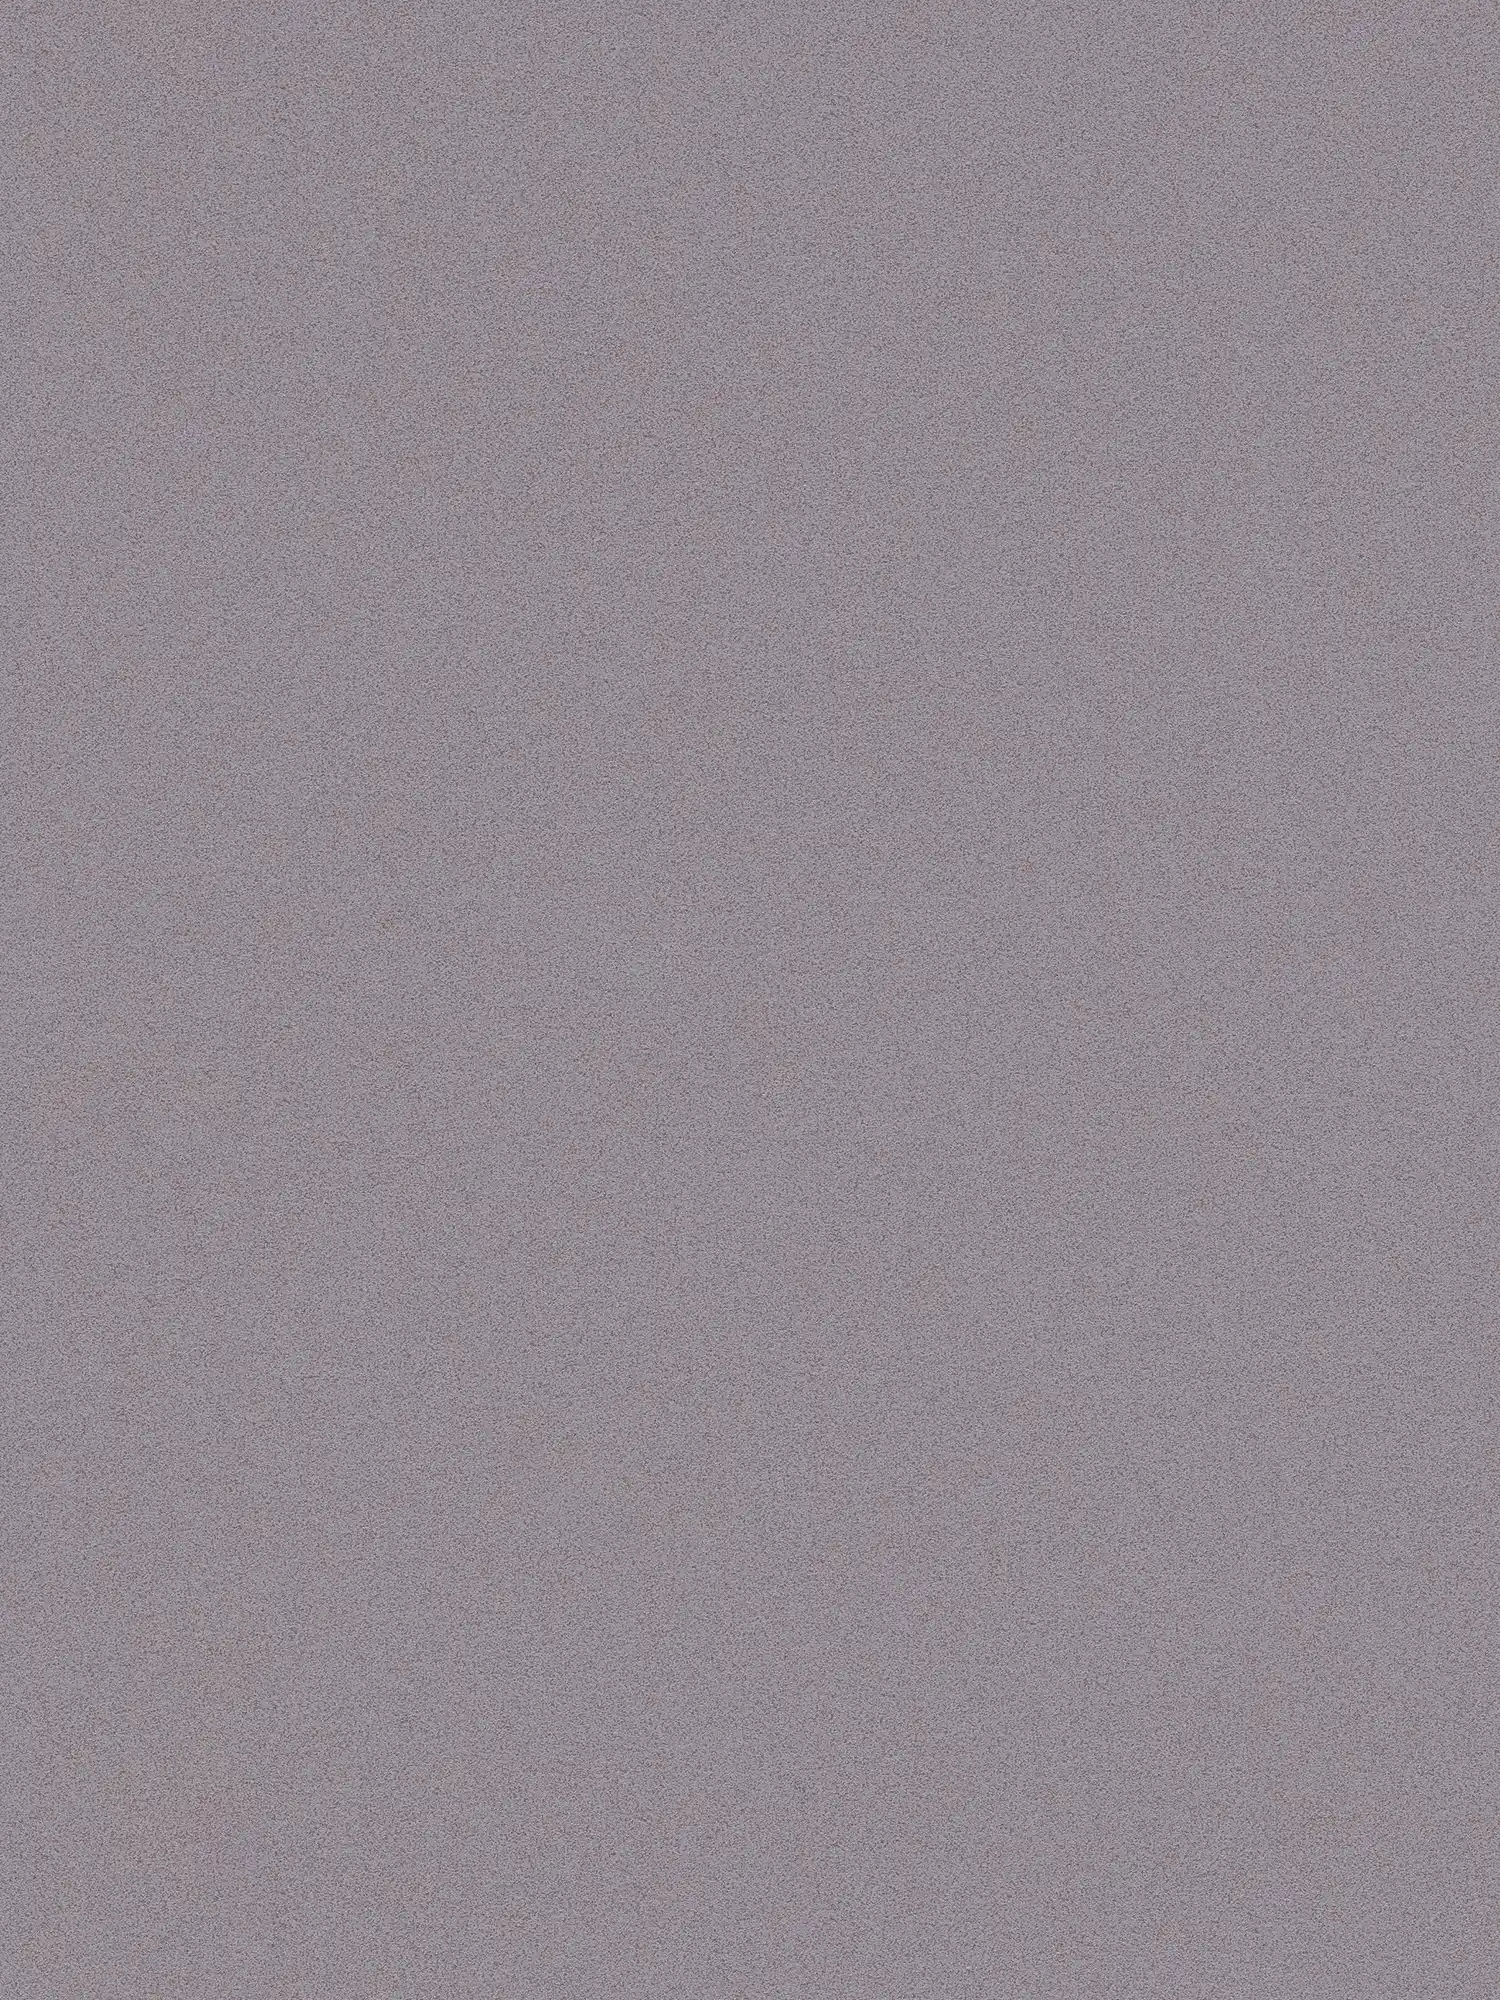 papel pintado gris paloma y mate con aspecto de yeso fino moteado
